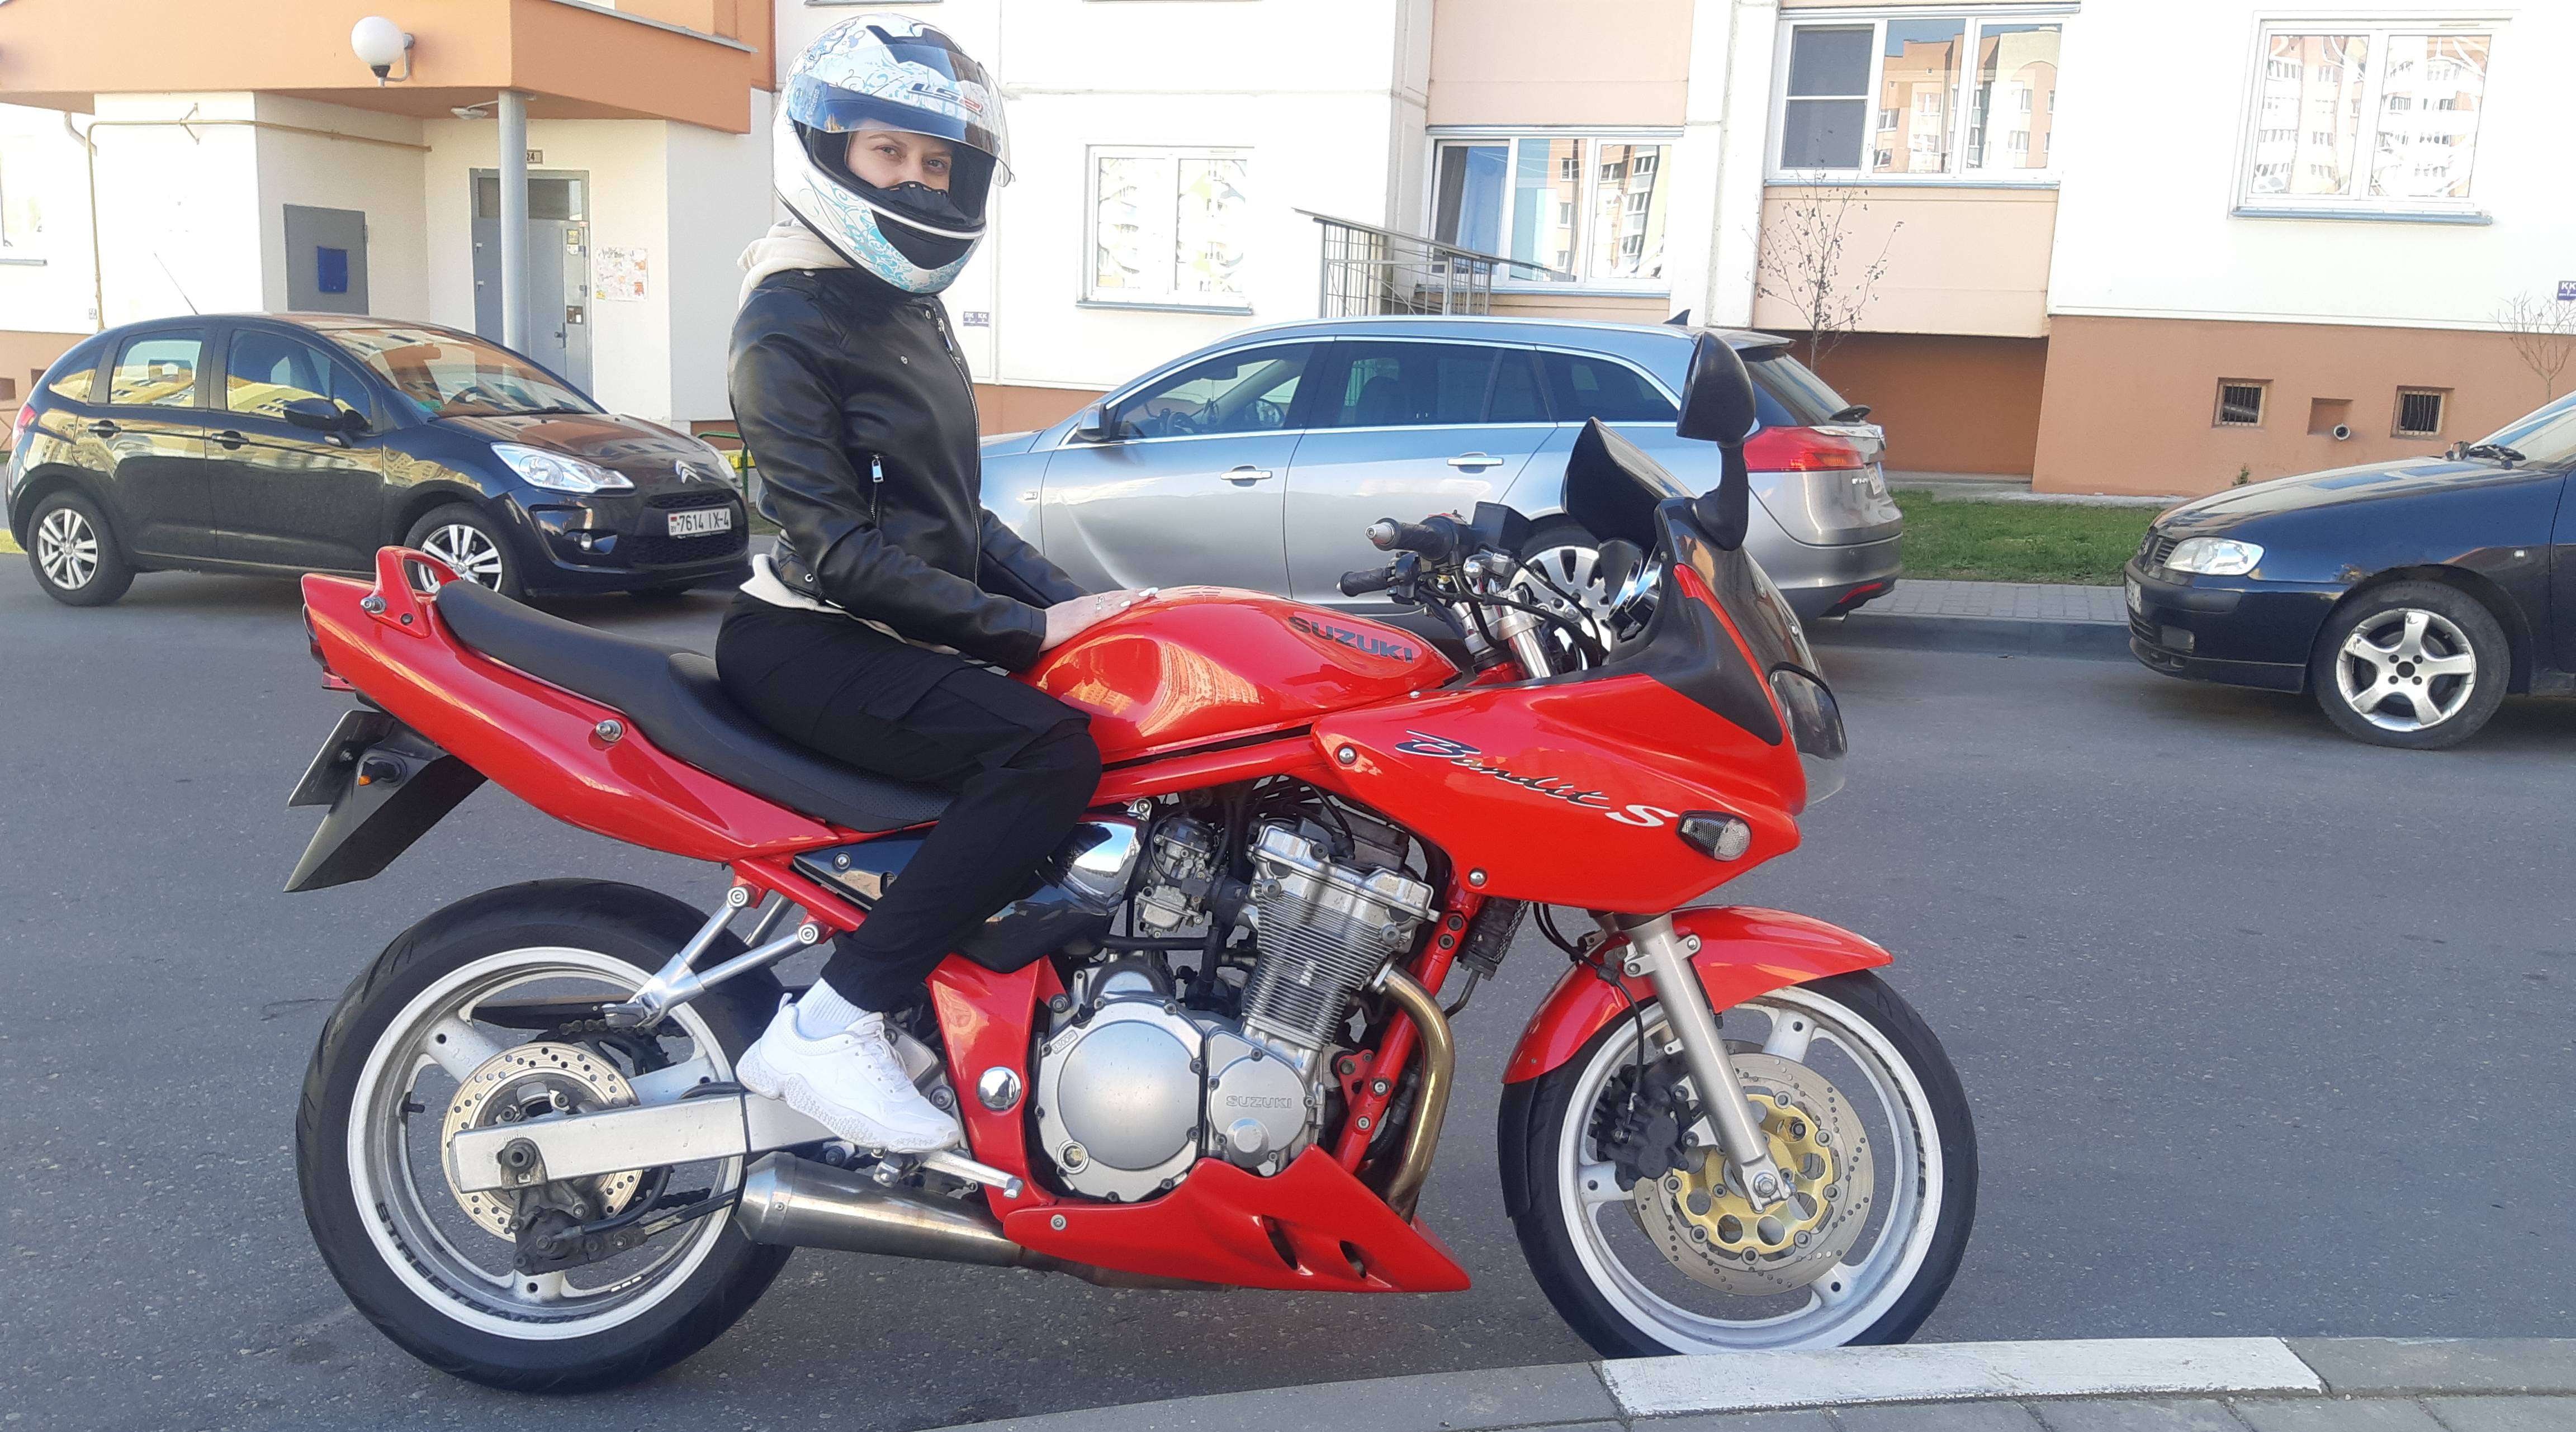 Купить мотоцикл Suzuki в Беларуси в кредит - цены, характеристики, фото. 